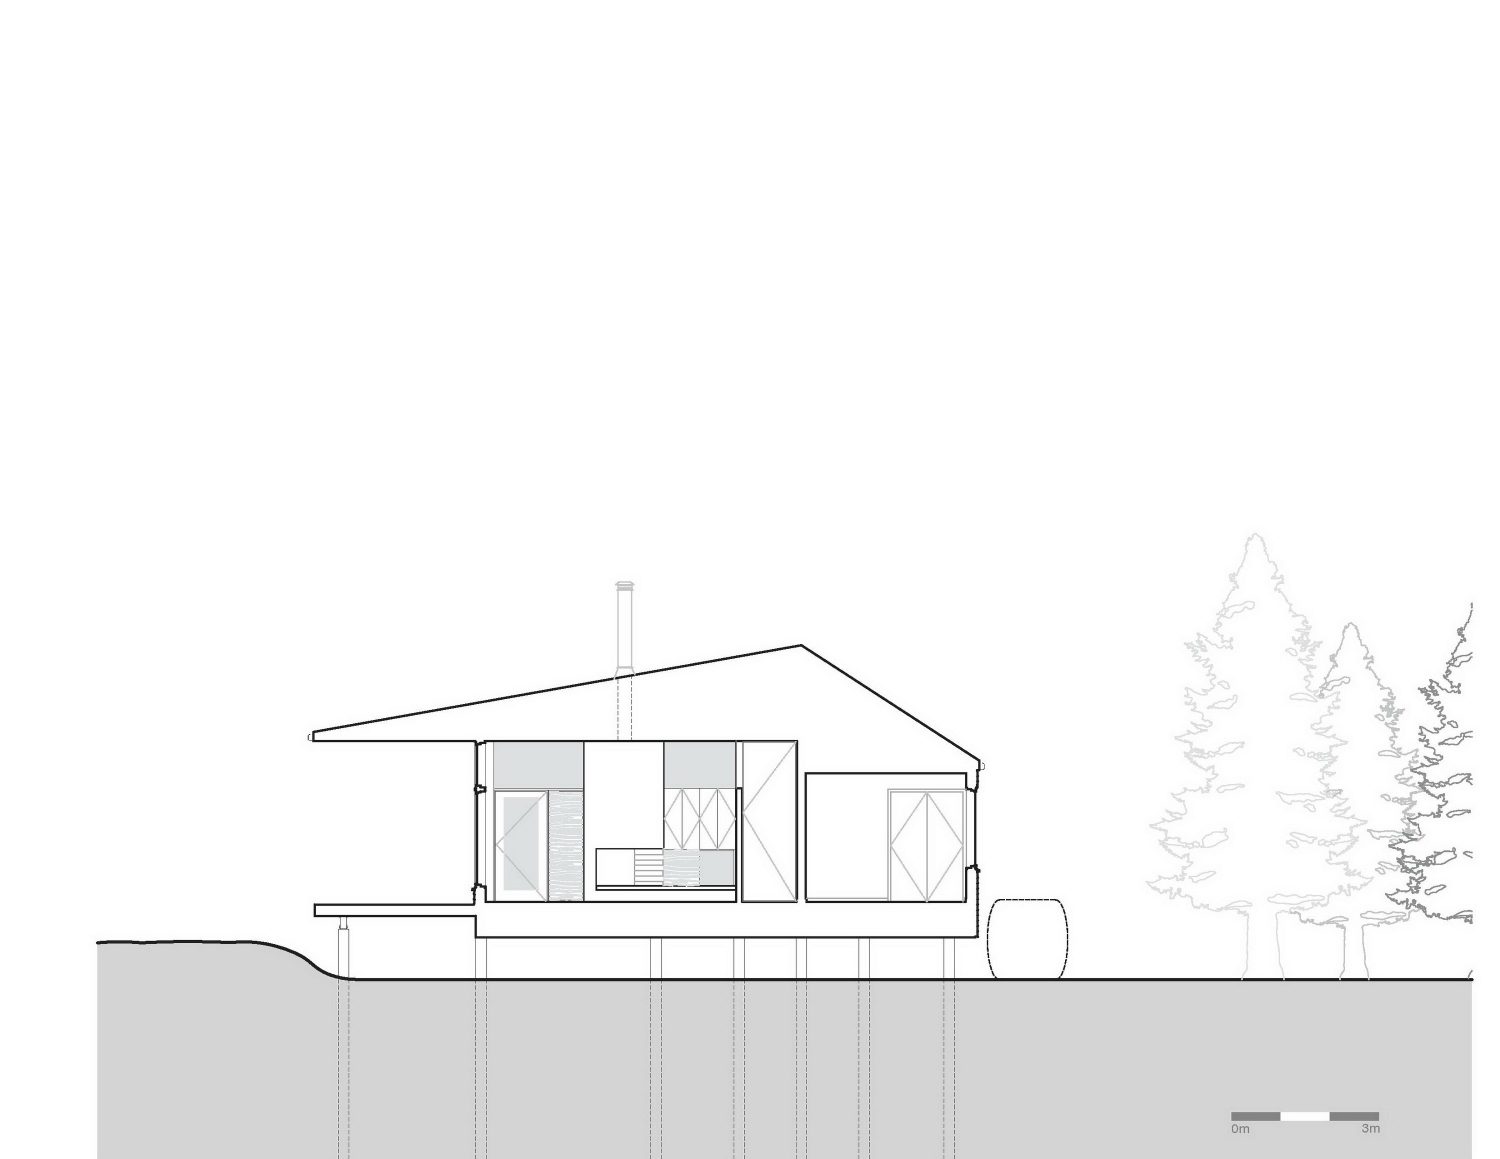 Lockeport Beach House by Nova Tayona Architects